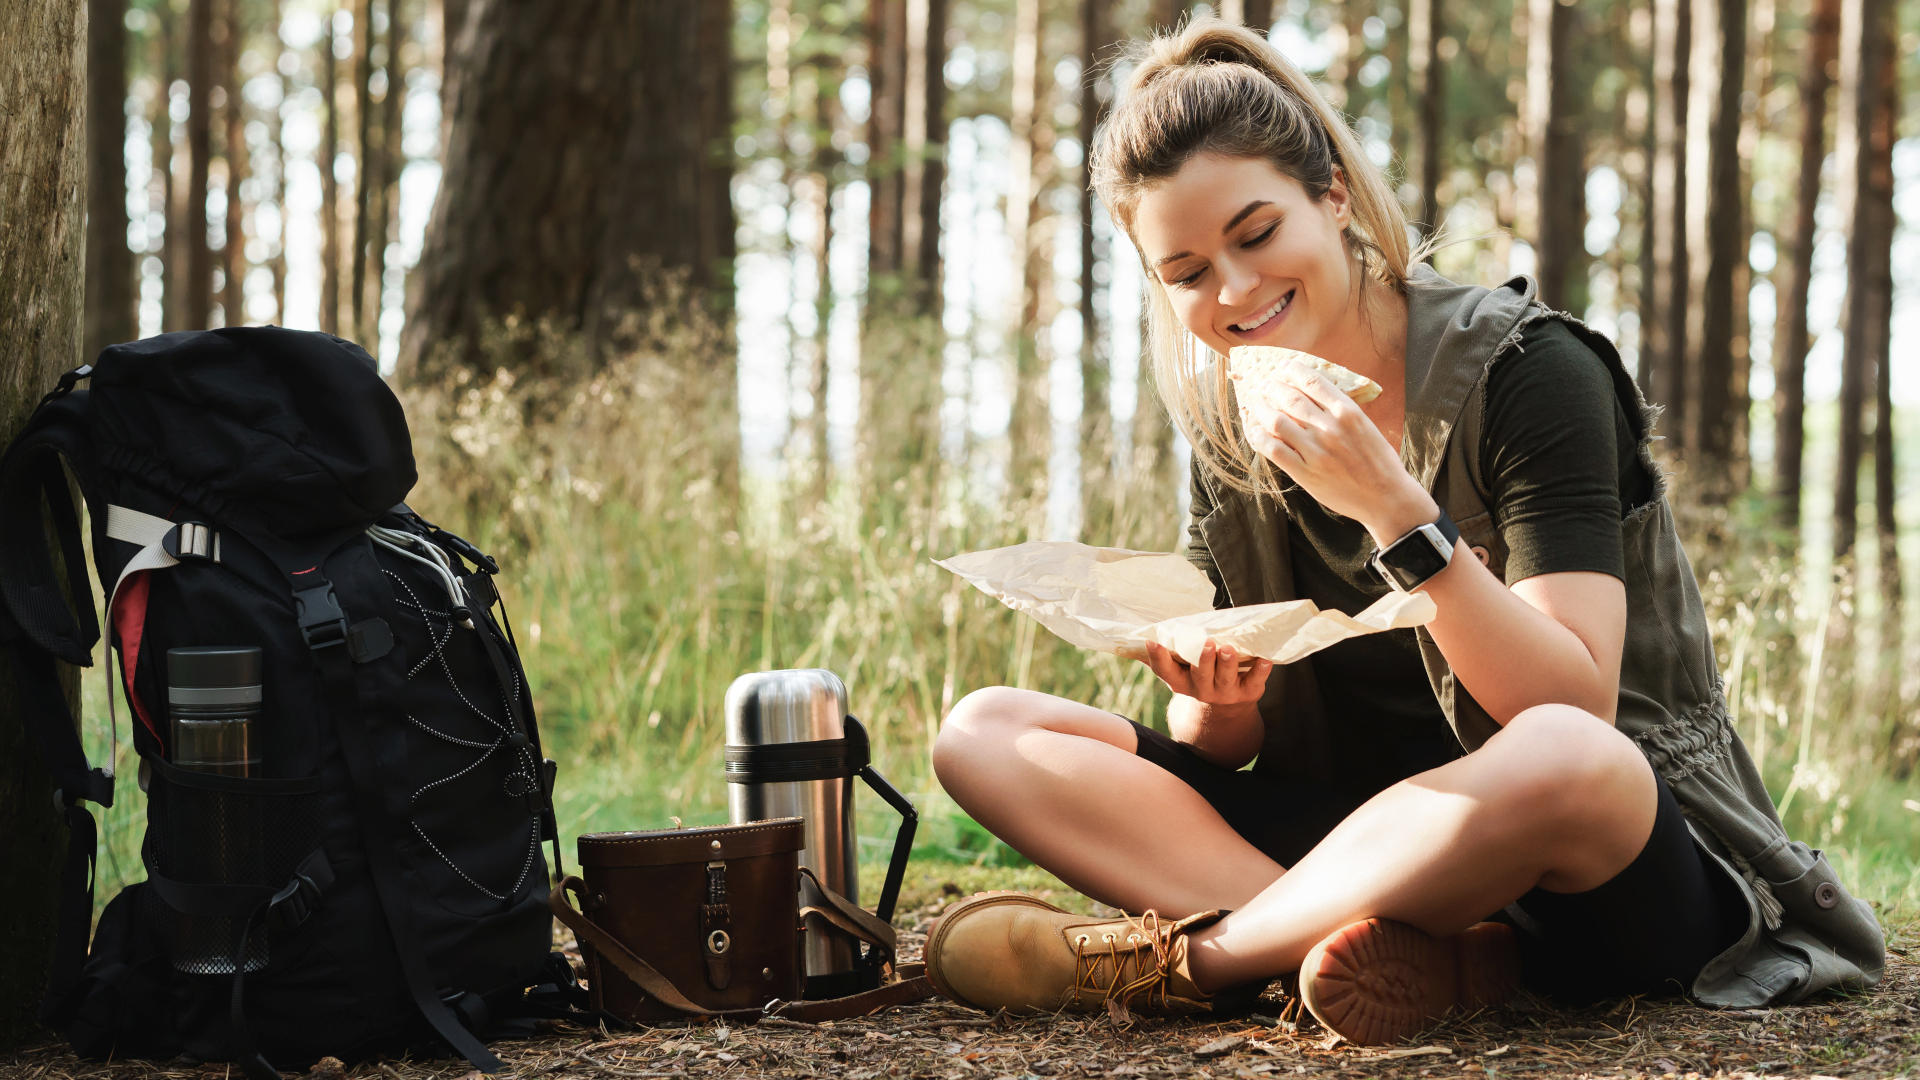 Un excursionista comiendo un sándwich en el bosque.